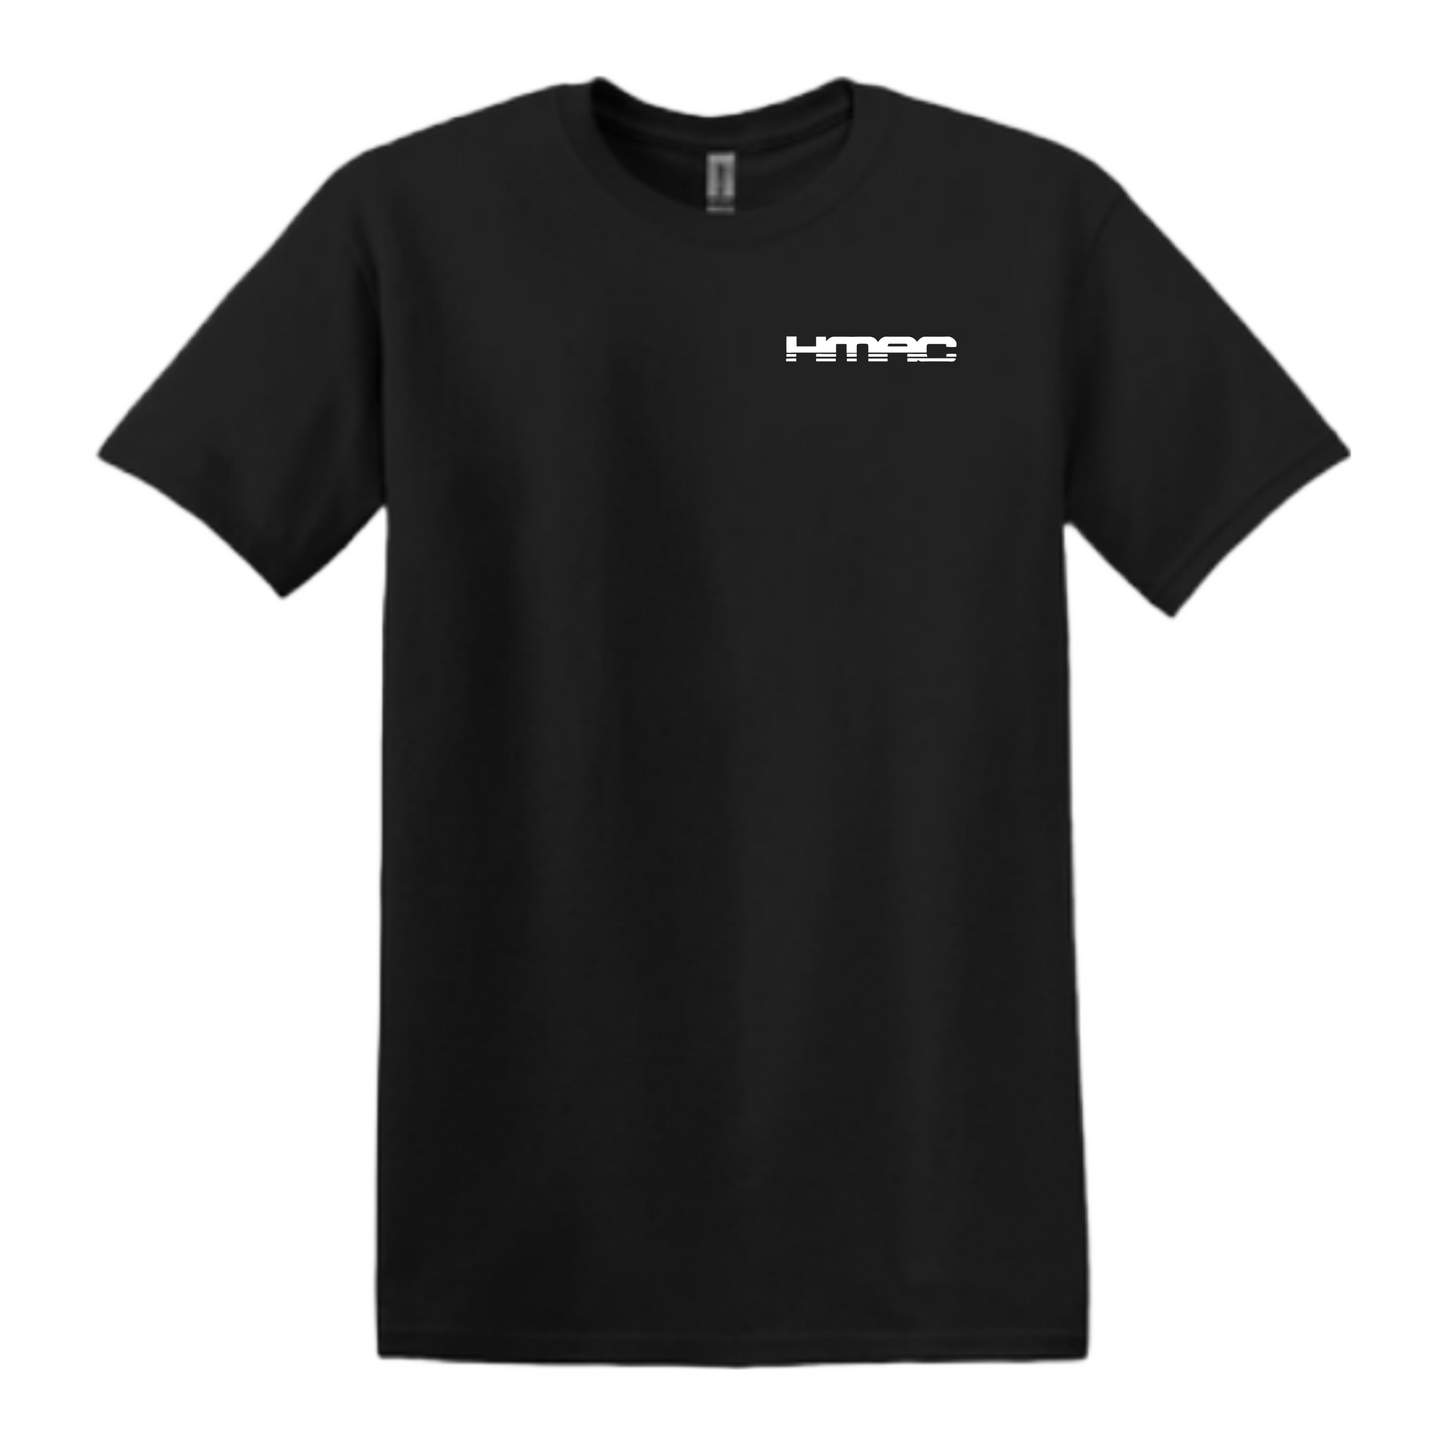 Hugh McLean HMAC Soft & Smooth T-Shirt